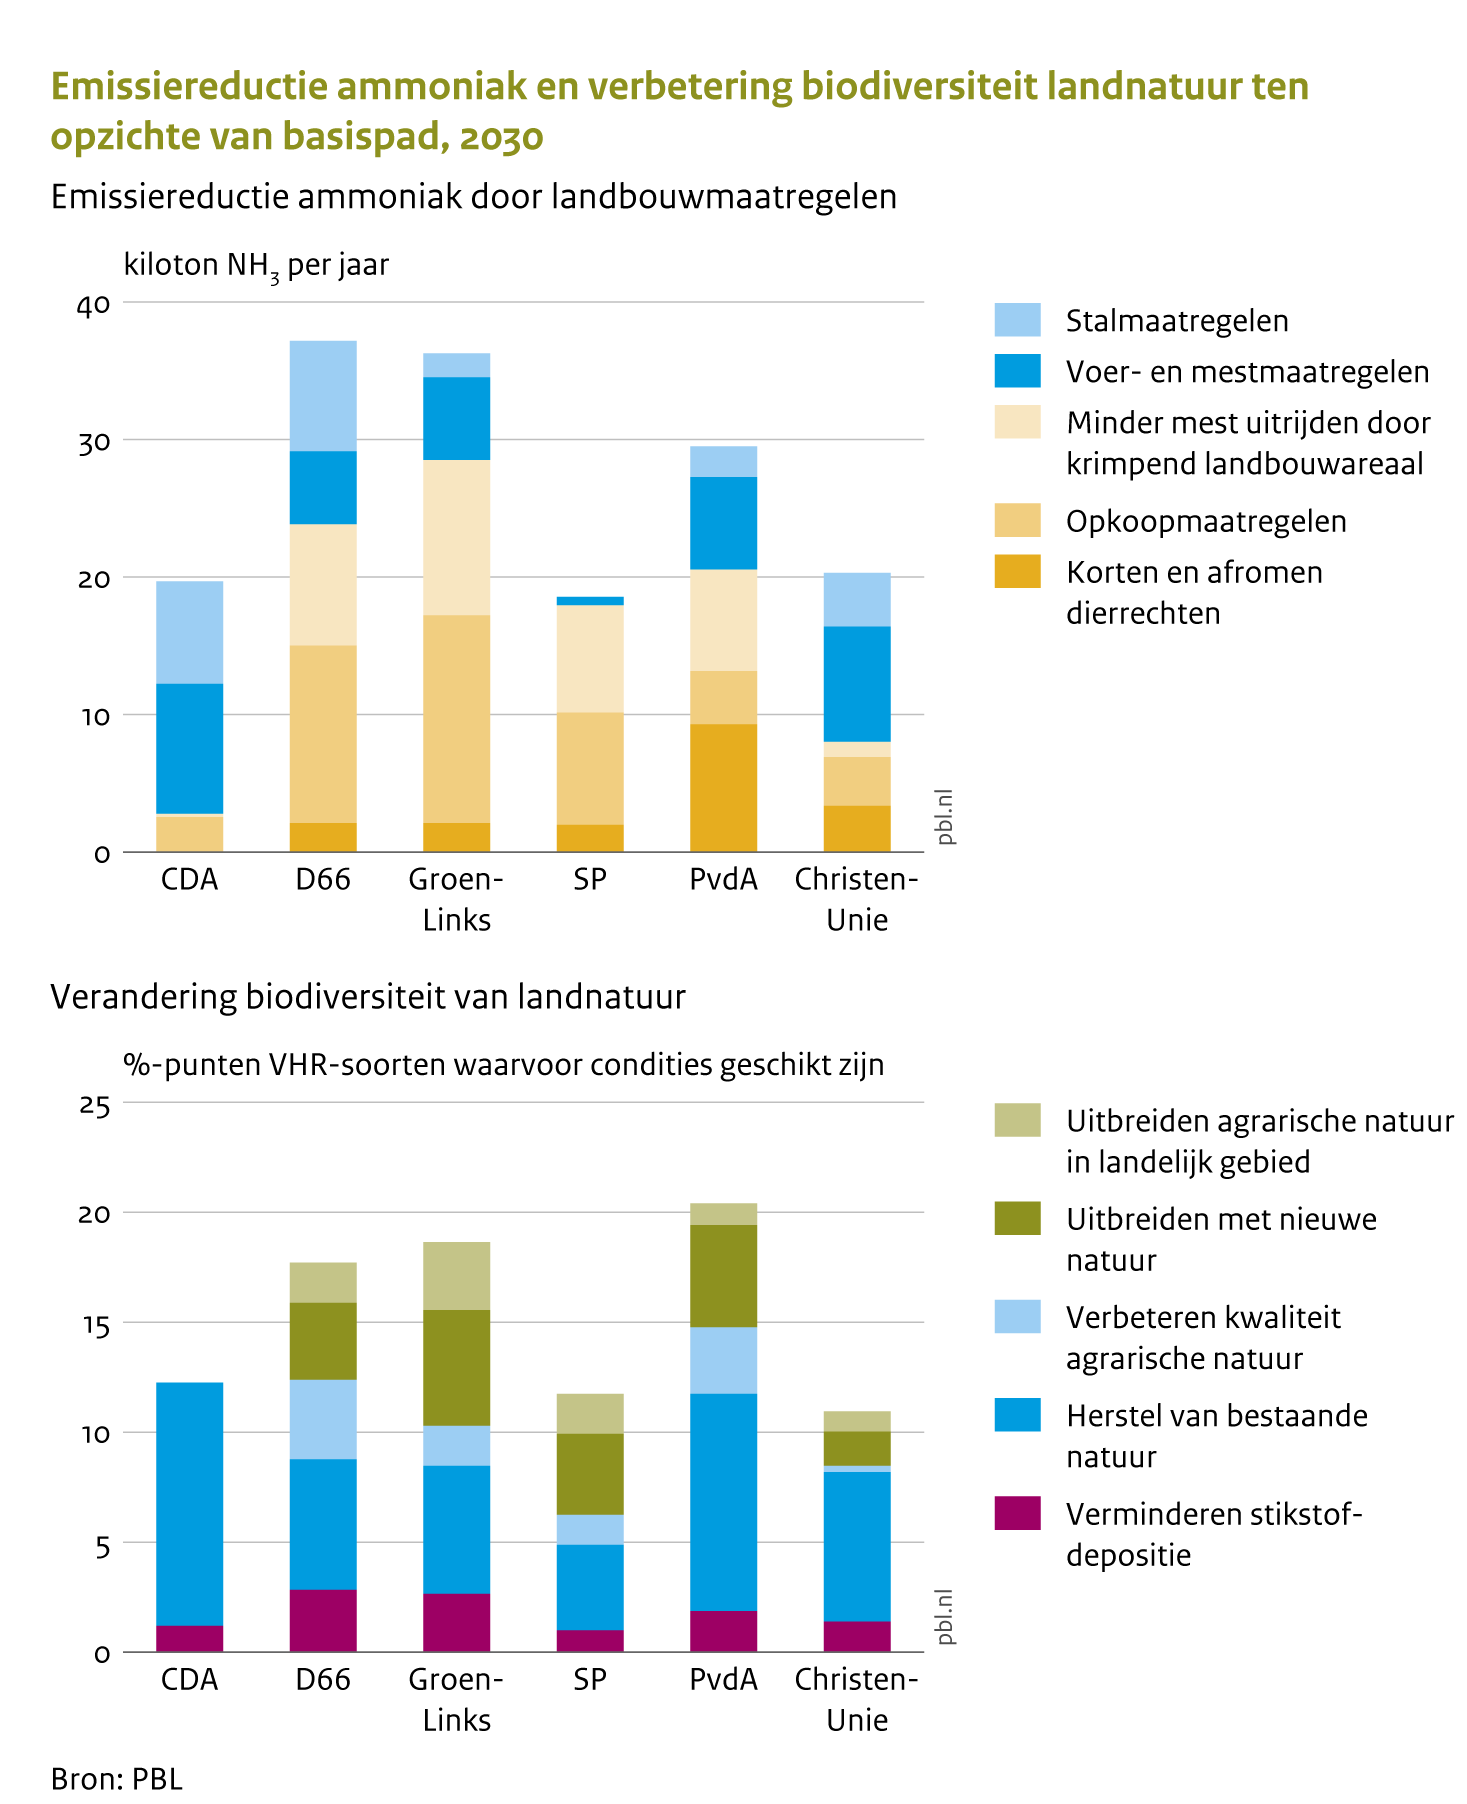 De figuur over ammoniakemissies laat zien wat de effecten zijn van de voorgestelde landbouwmaatregelen van de politieke partijen op de emissie van ammoniak. Bij uitvoering van de voorgestelde maatregelen dalen ten opzichte van het basispad de ammoniakemissies in 2030 naar verwachting circa 20 kiloton per jaar voor het CDA, de SP en de ChristenUnie, circa 30 kiloton per jaar voor de PvdA en circa 35 kiloton per jaar voor D66 en GroenLinks. De figuur over biodiversiteit van landnatuur laat zien wat de effecten zijn van de voorgestelde maatregelenpakketten van de politieke partijen zijn op de benodigde condities voor een gunstige staat van instandhouding van Vogel- en Habitatrichtlijnsoorten op het land. Bij uitvoering van de maatregelenpakketten verbeteren ten opzichte van het basispad deze condities in 2030 met 10 procentpunt voor het CDA, SP en de ChristenUnie en 15 tot 20 procentpunt bij D66, GroenLinks en de PvdA.